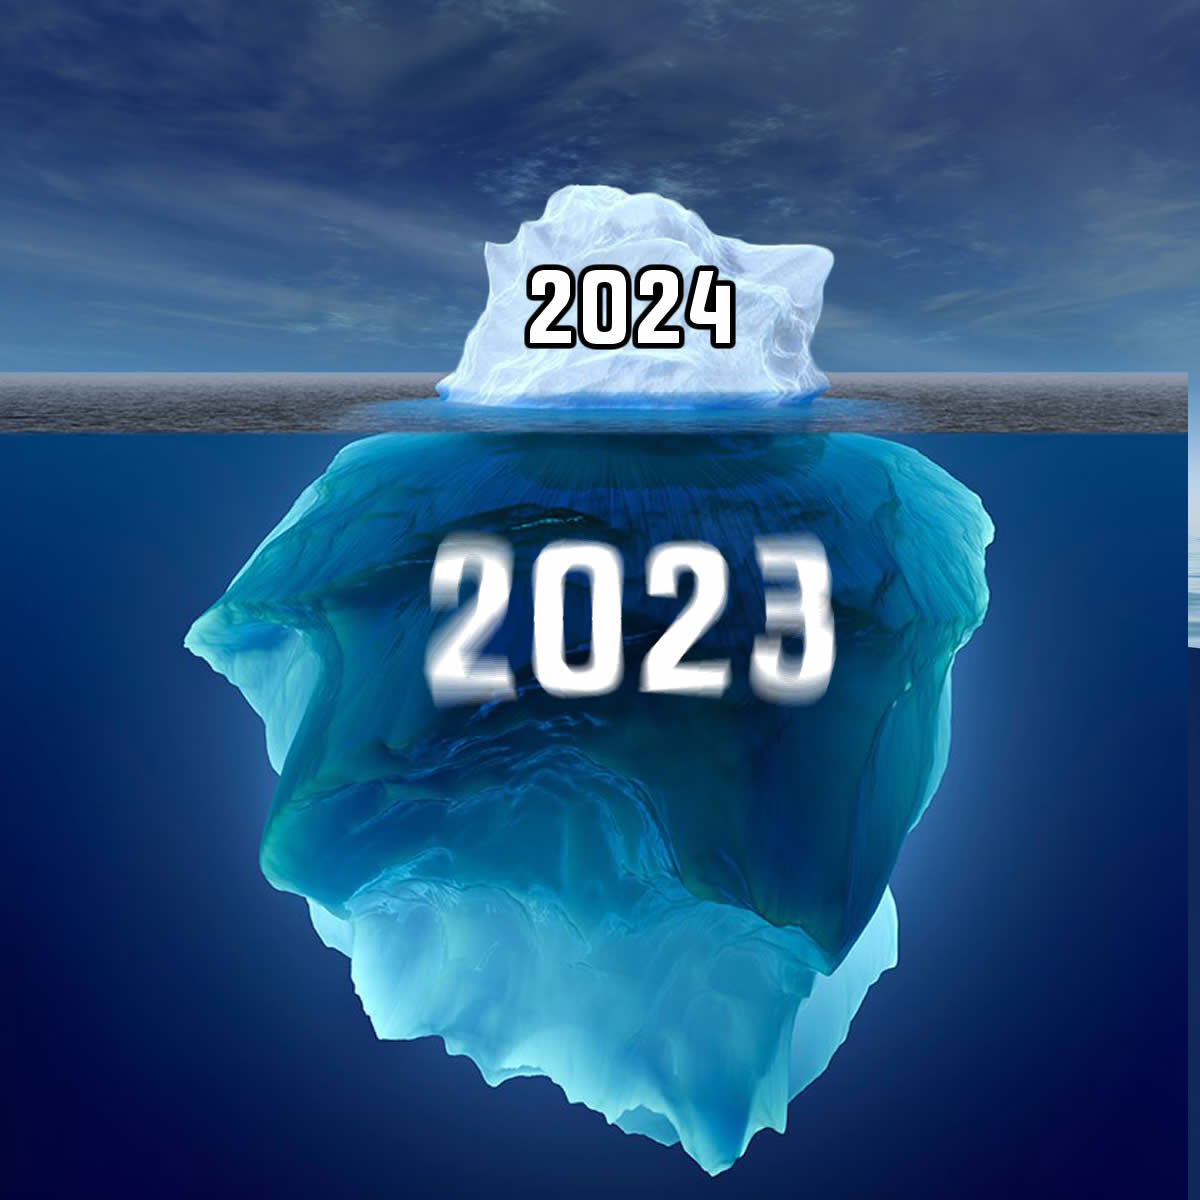 Photo d'un iceberg avec toutes les années passées et le nouveau 2024